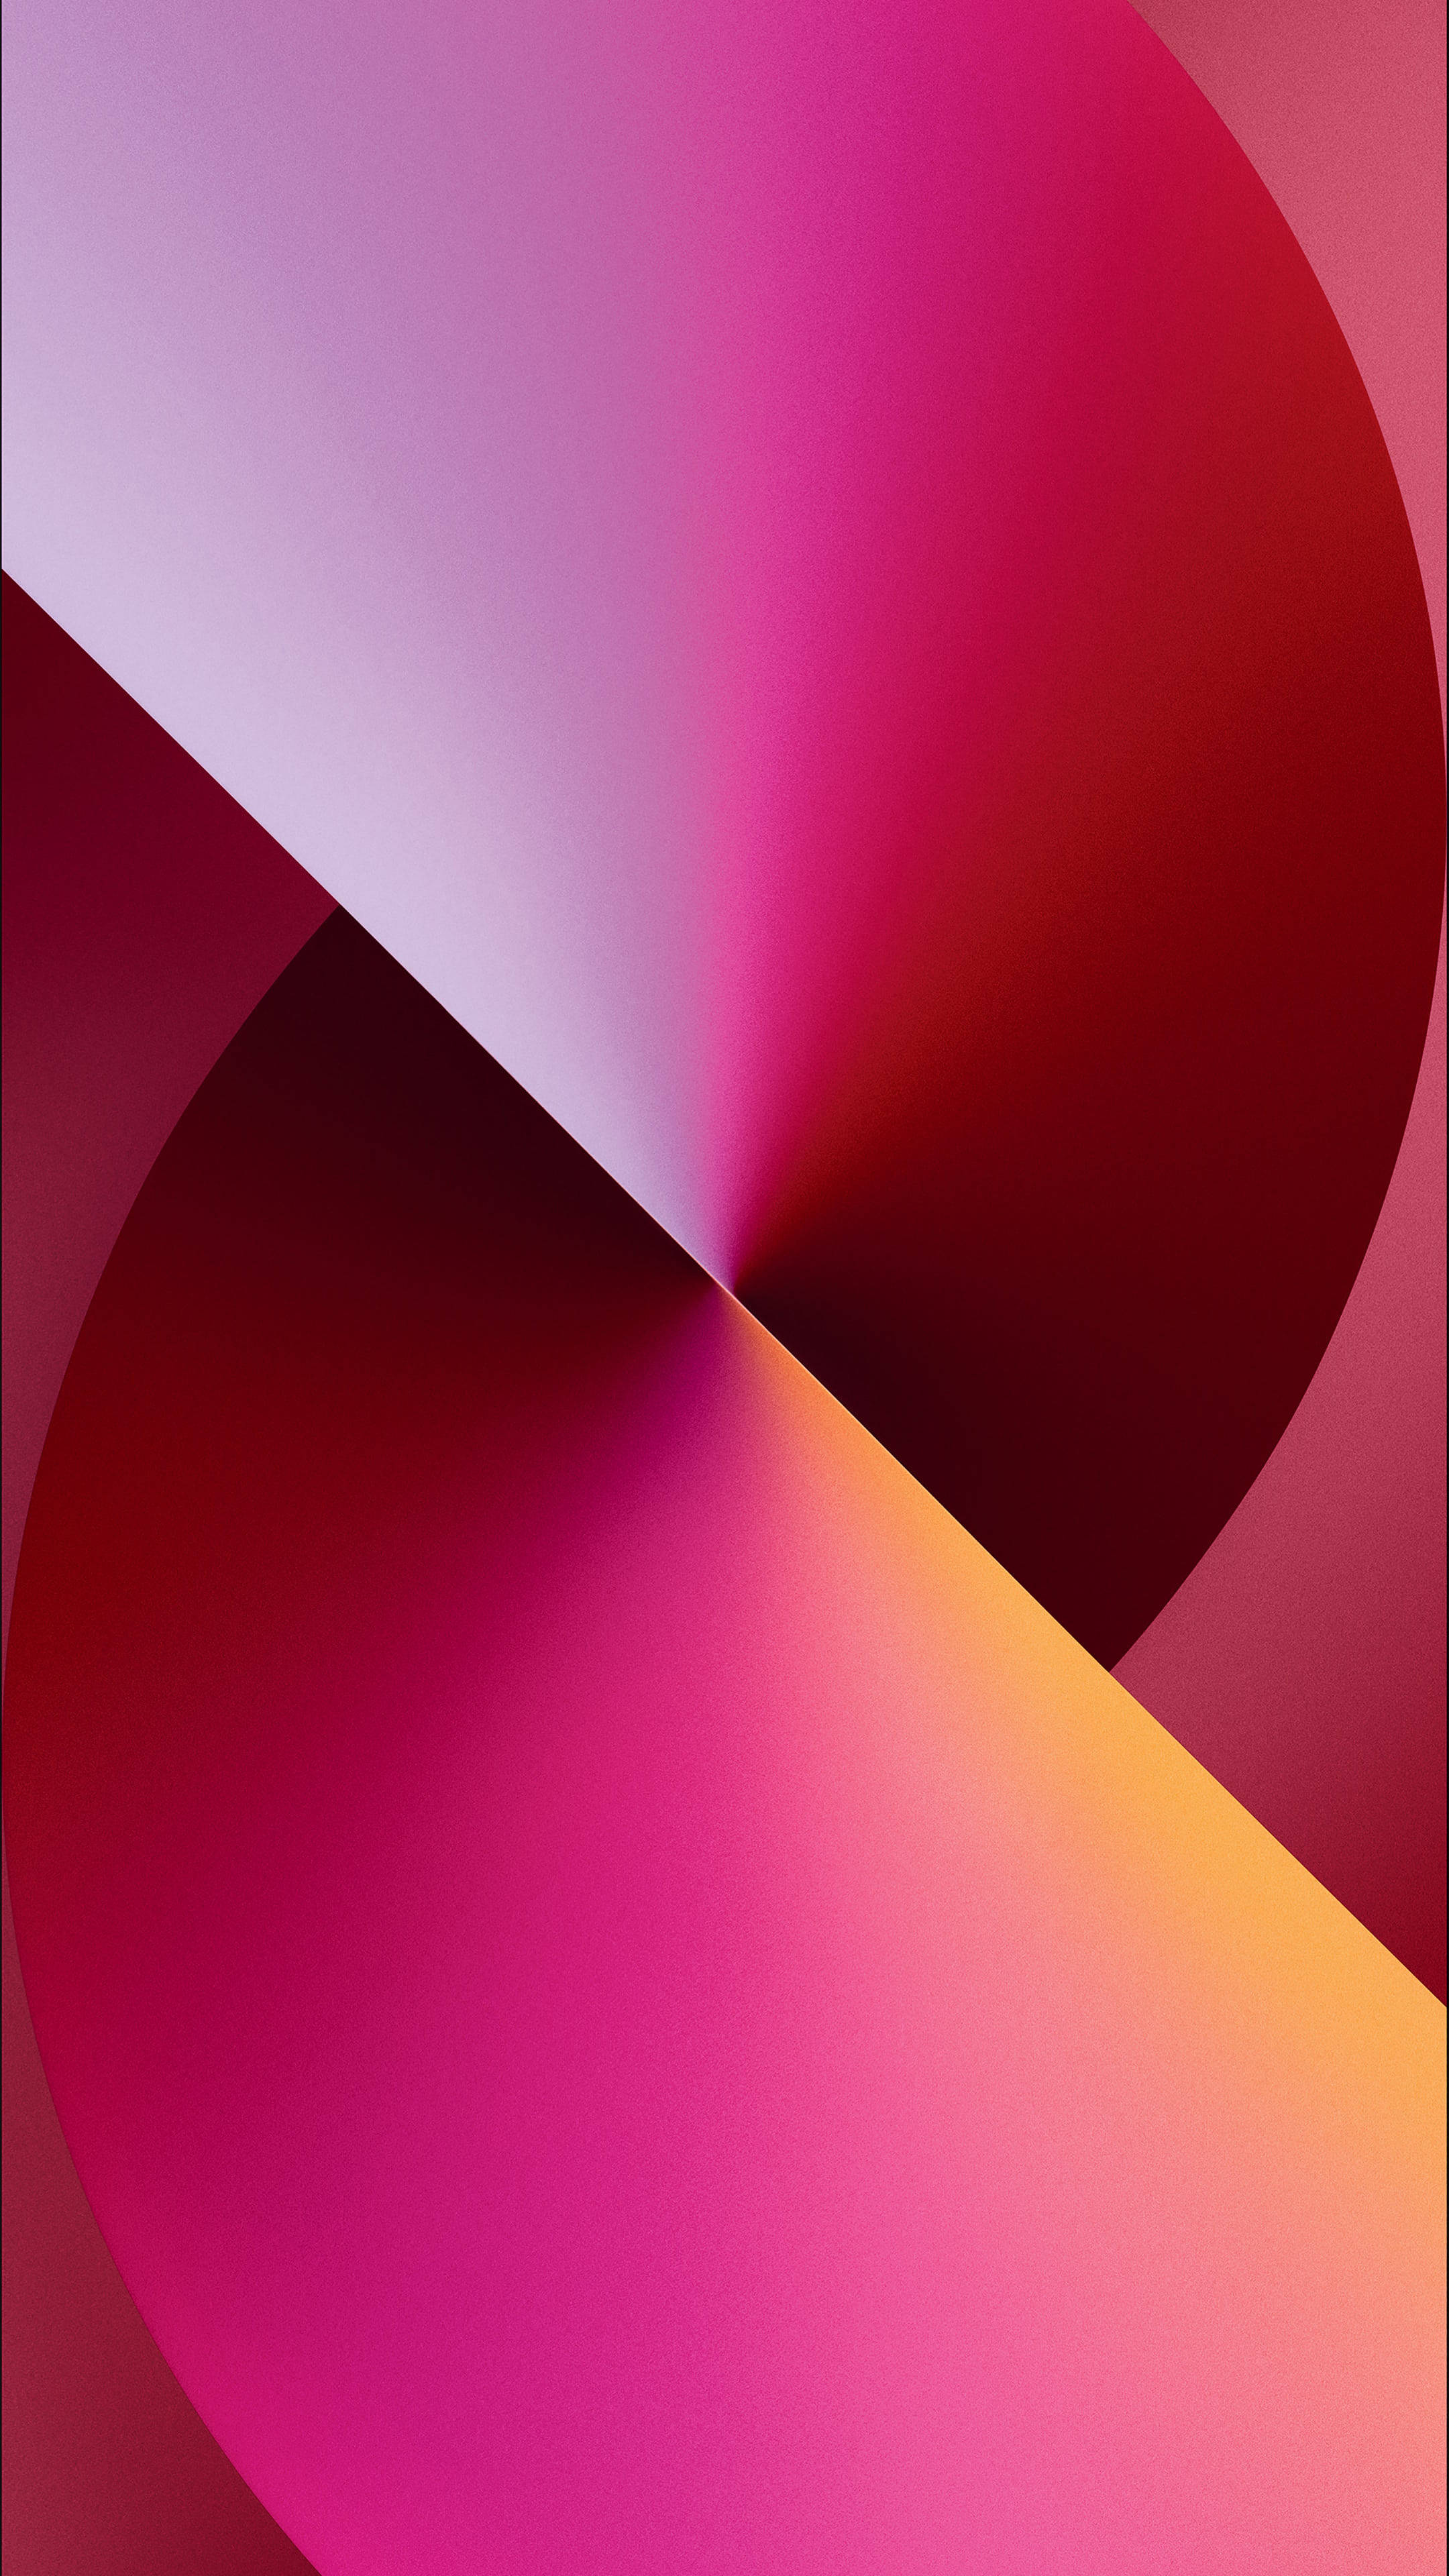 Nếu bạn đang tìm kiếm một bộ sưu tập hình nền đẹp và đa dạng màu sắc cho chiếc iPhone 13 Pro Max mới của mình, thì hãy tải ngay bức ảnh đỏ split của chúng tôi! Hình ảnh này không chỉ đẹp mà còn rất ấn tượng, đem lại sự mới lạ cho chiếc điện thoại của bạn! Hãy tìm và cài đặt ngay để tận hưởng những trải nghiệm tuyệt vời!